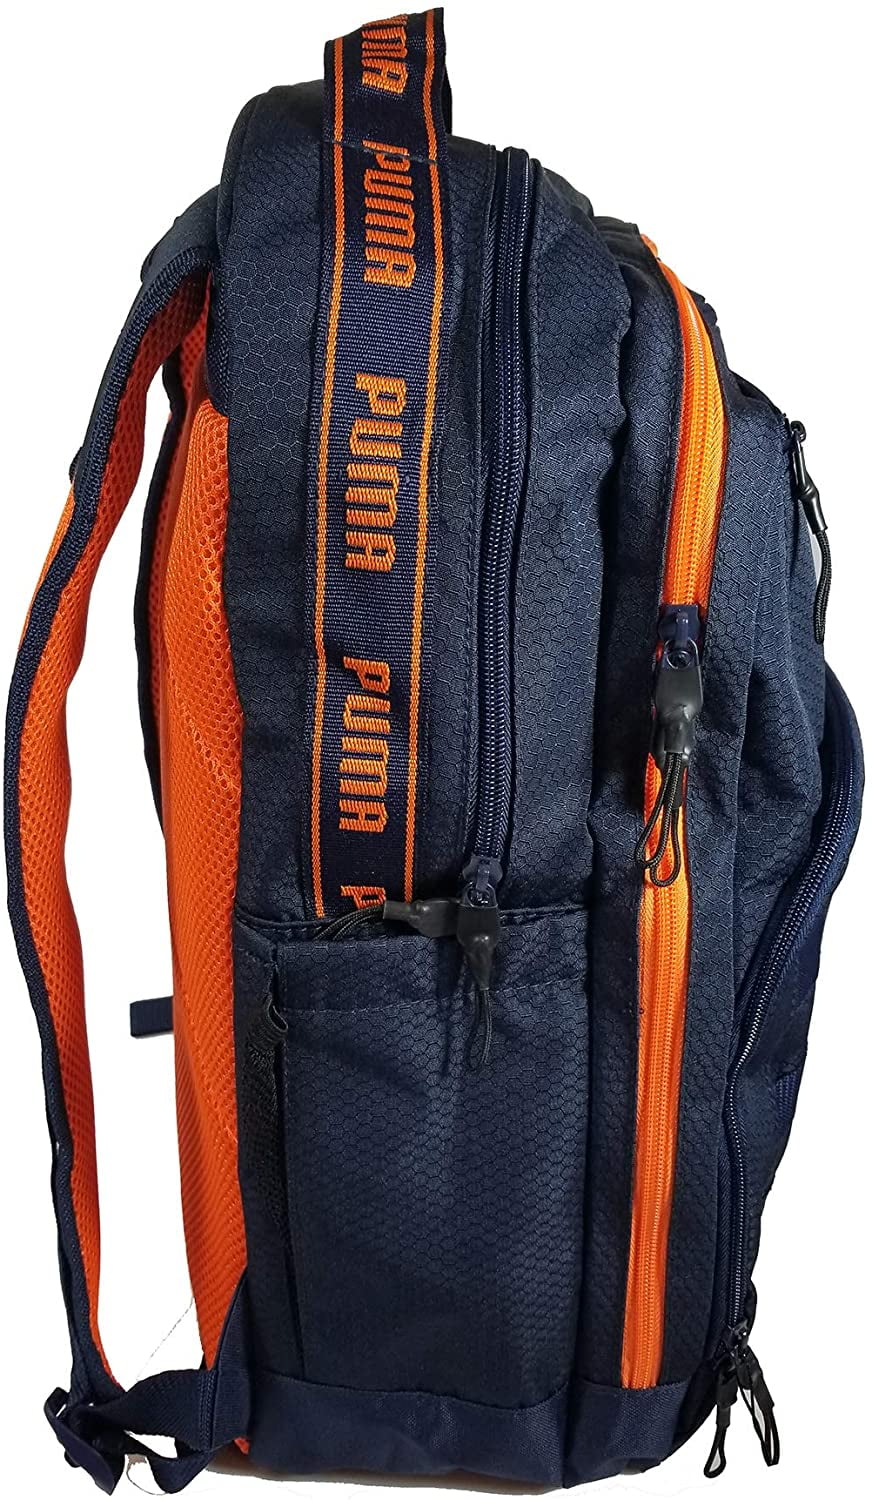 puma backpack orange